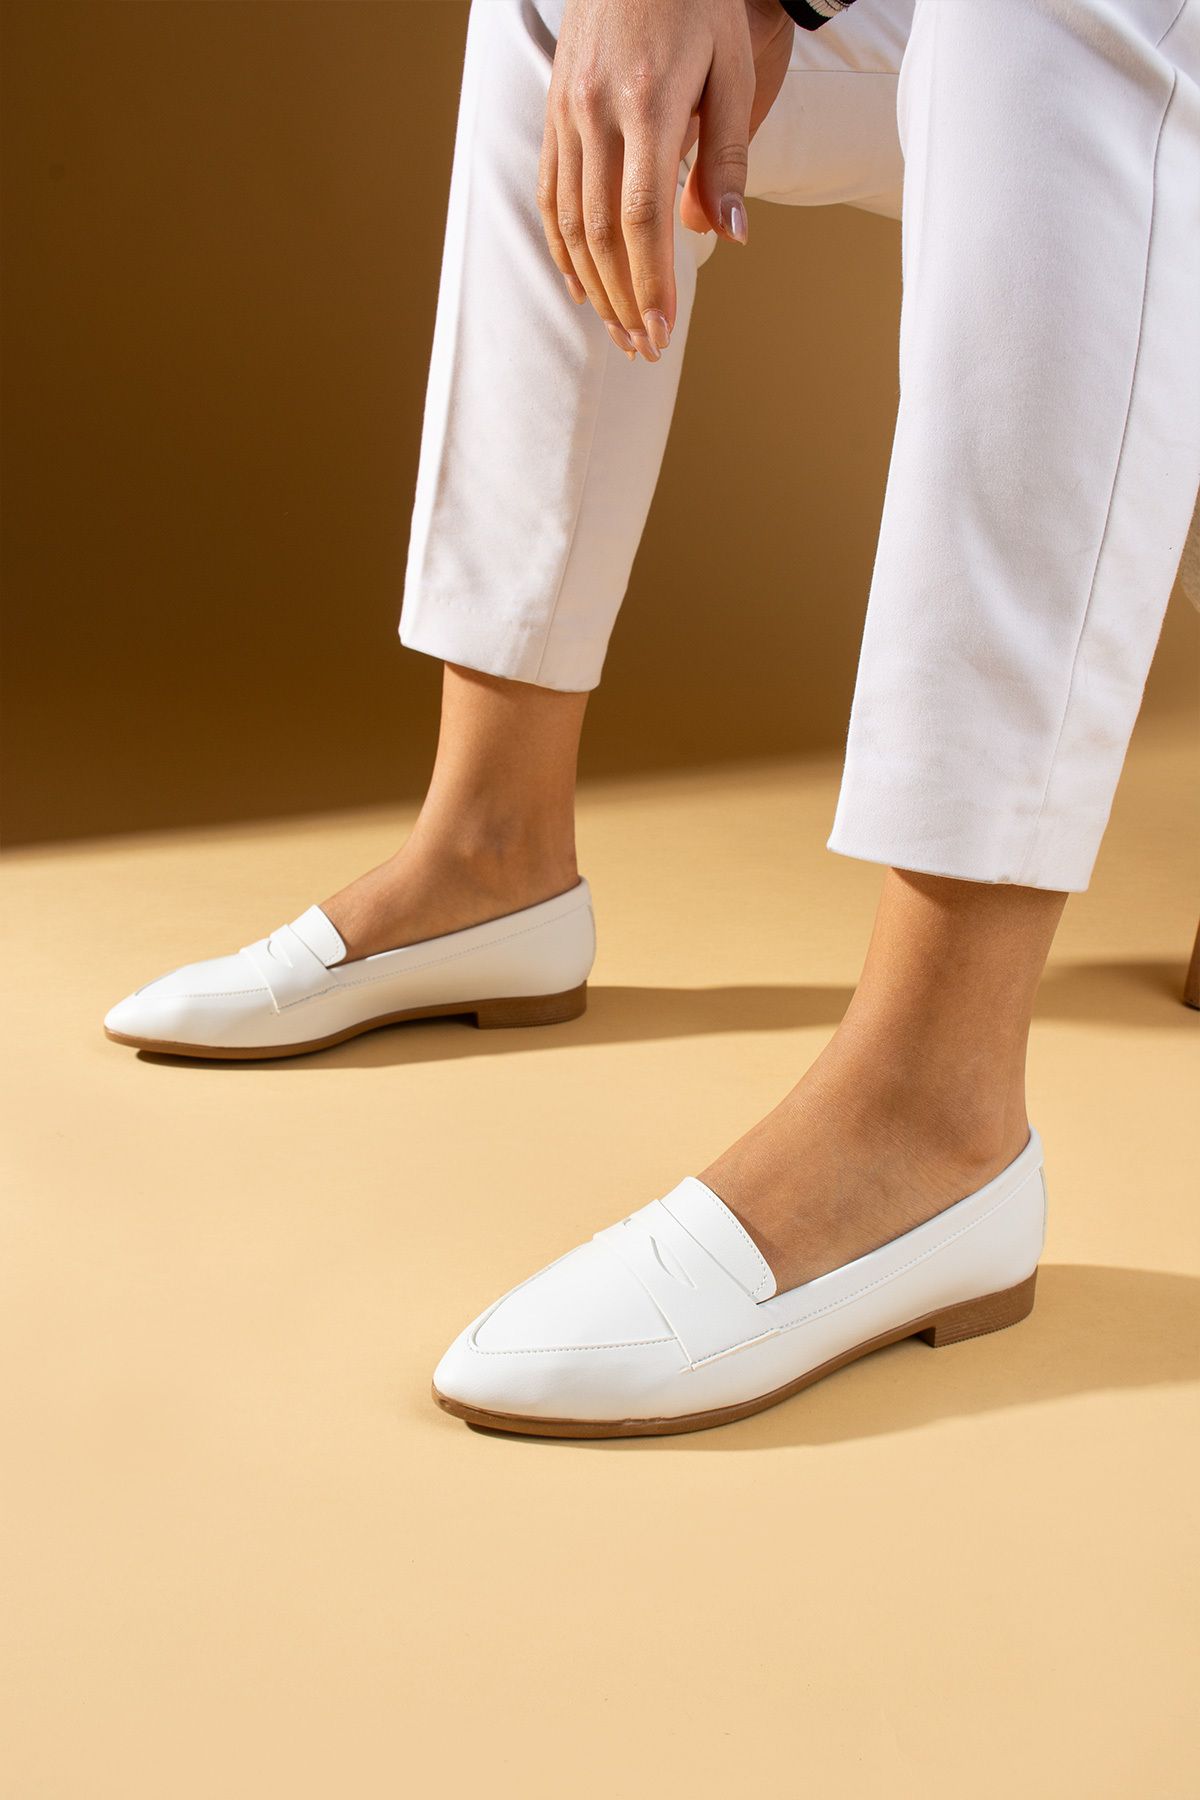 Pembe Potin Kadın Babet Beyaz Loafer Hafif Rahat Taban Şık Günlük Ayakkabı